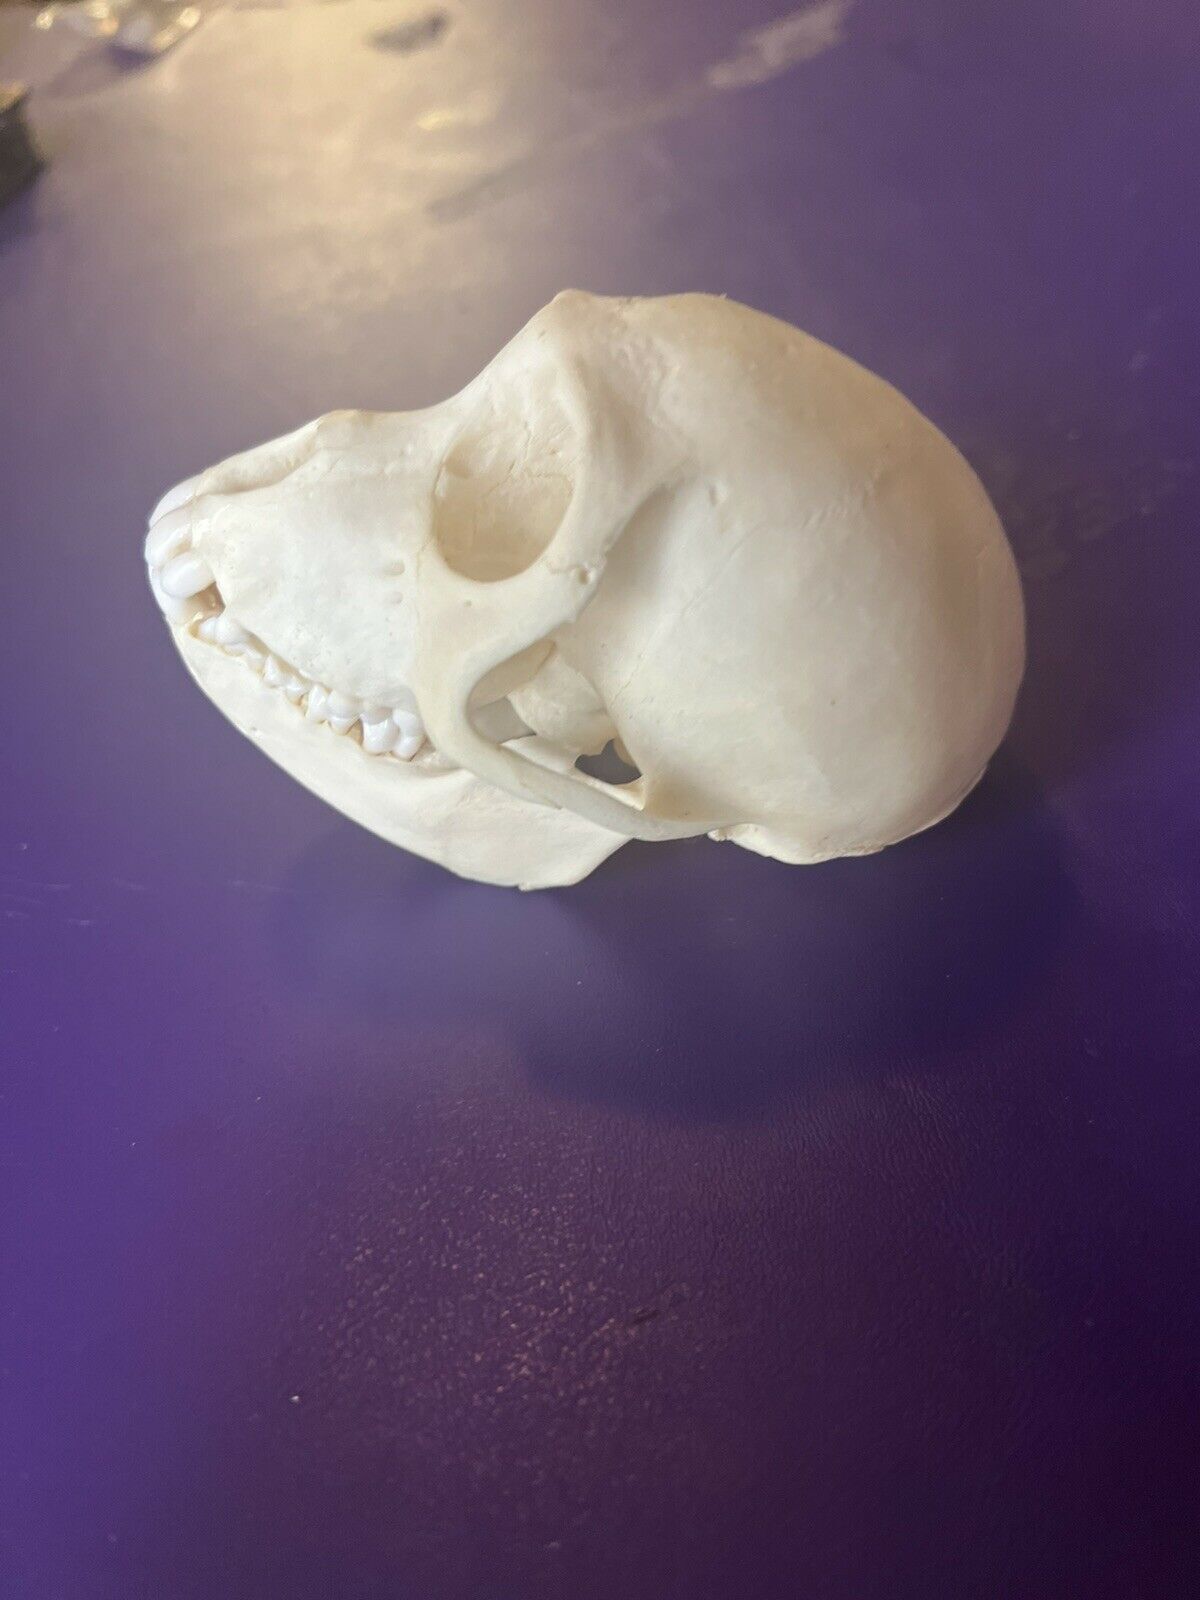 Female Vervet monkey skull grade A